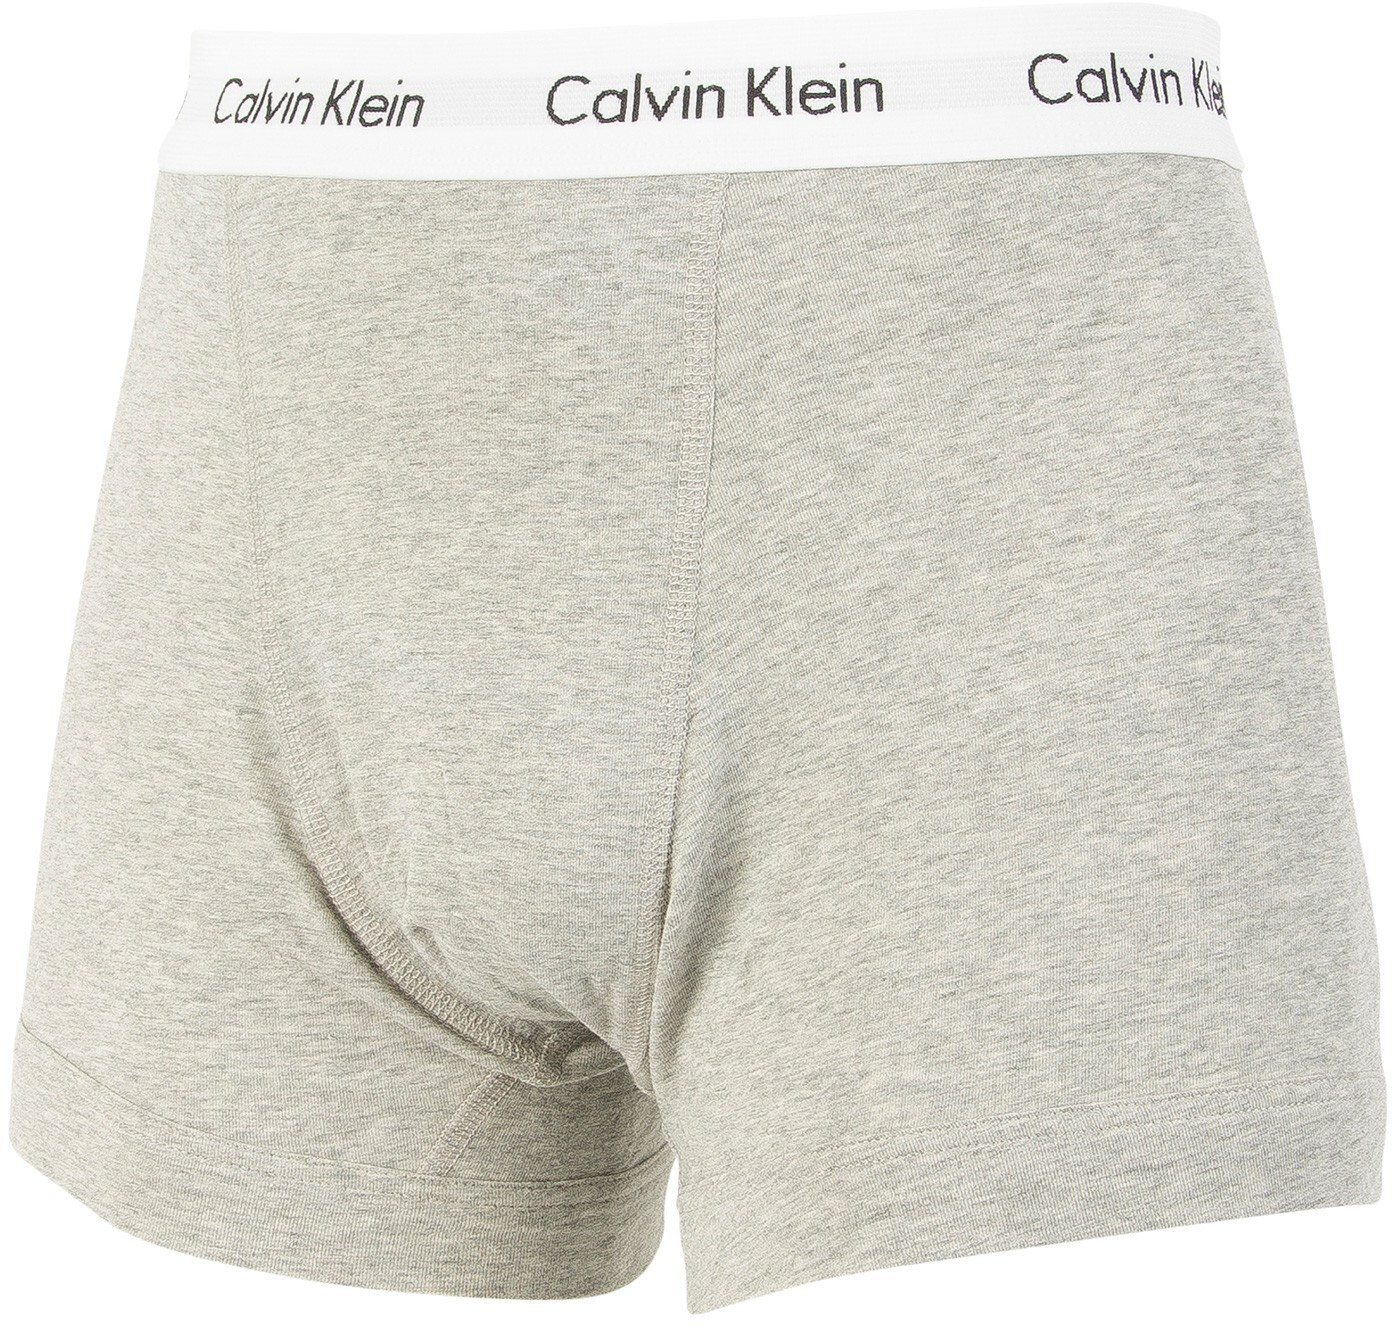 Calvin Klein Cotton Stretch 2 Pack Boxer Brief Shadow Grey U2666